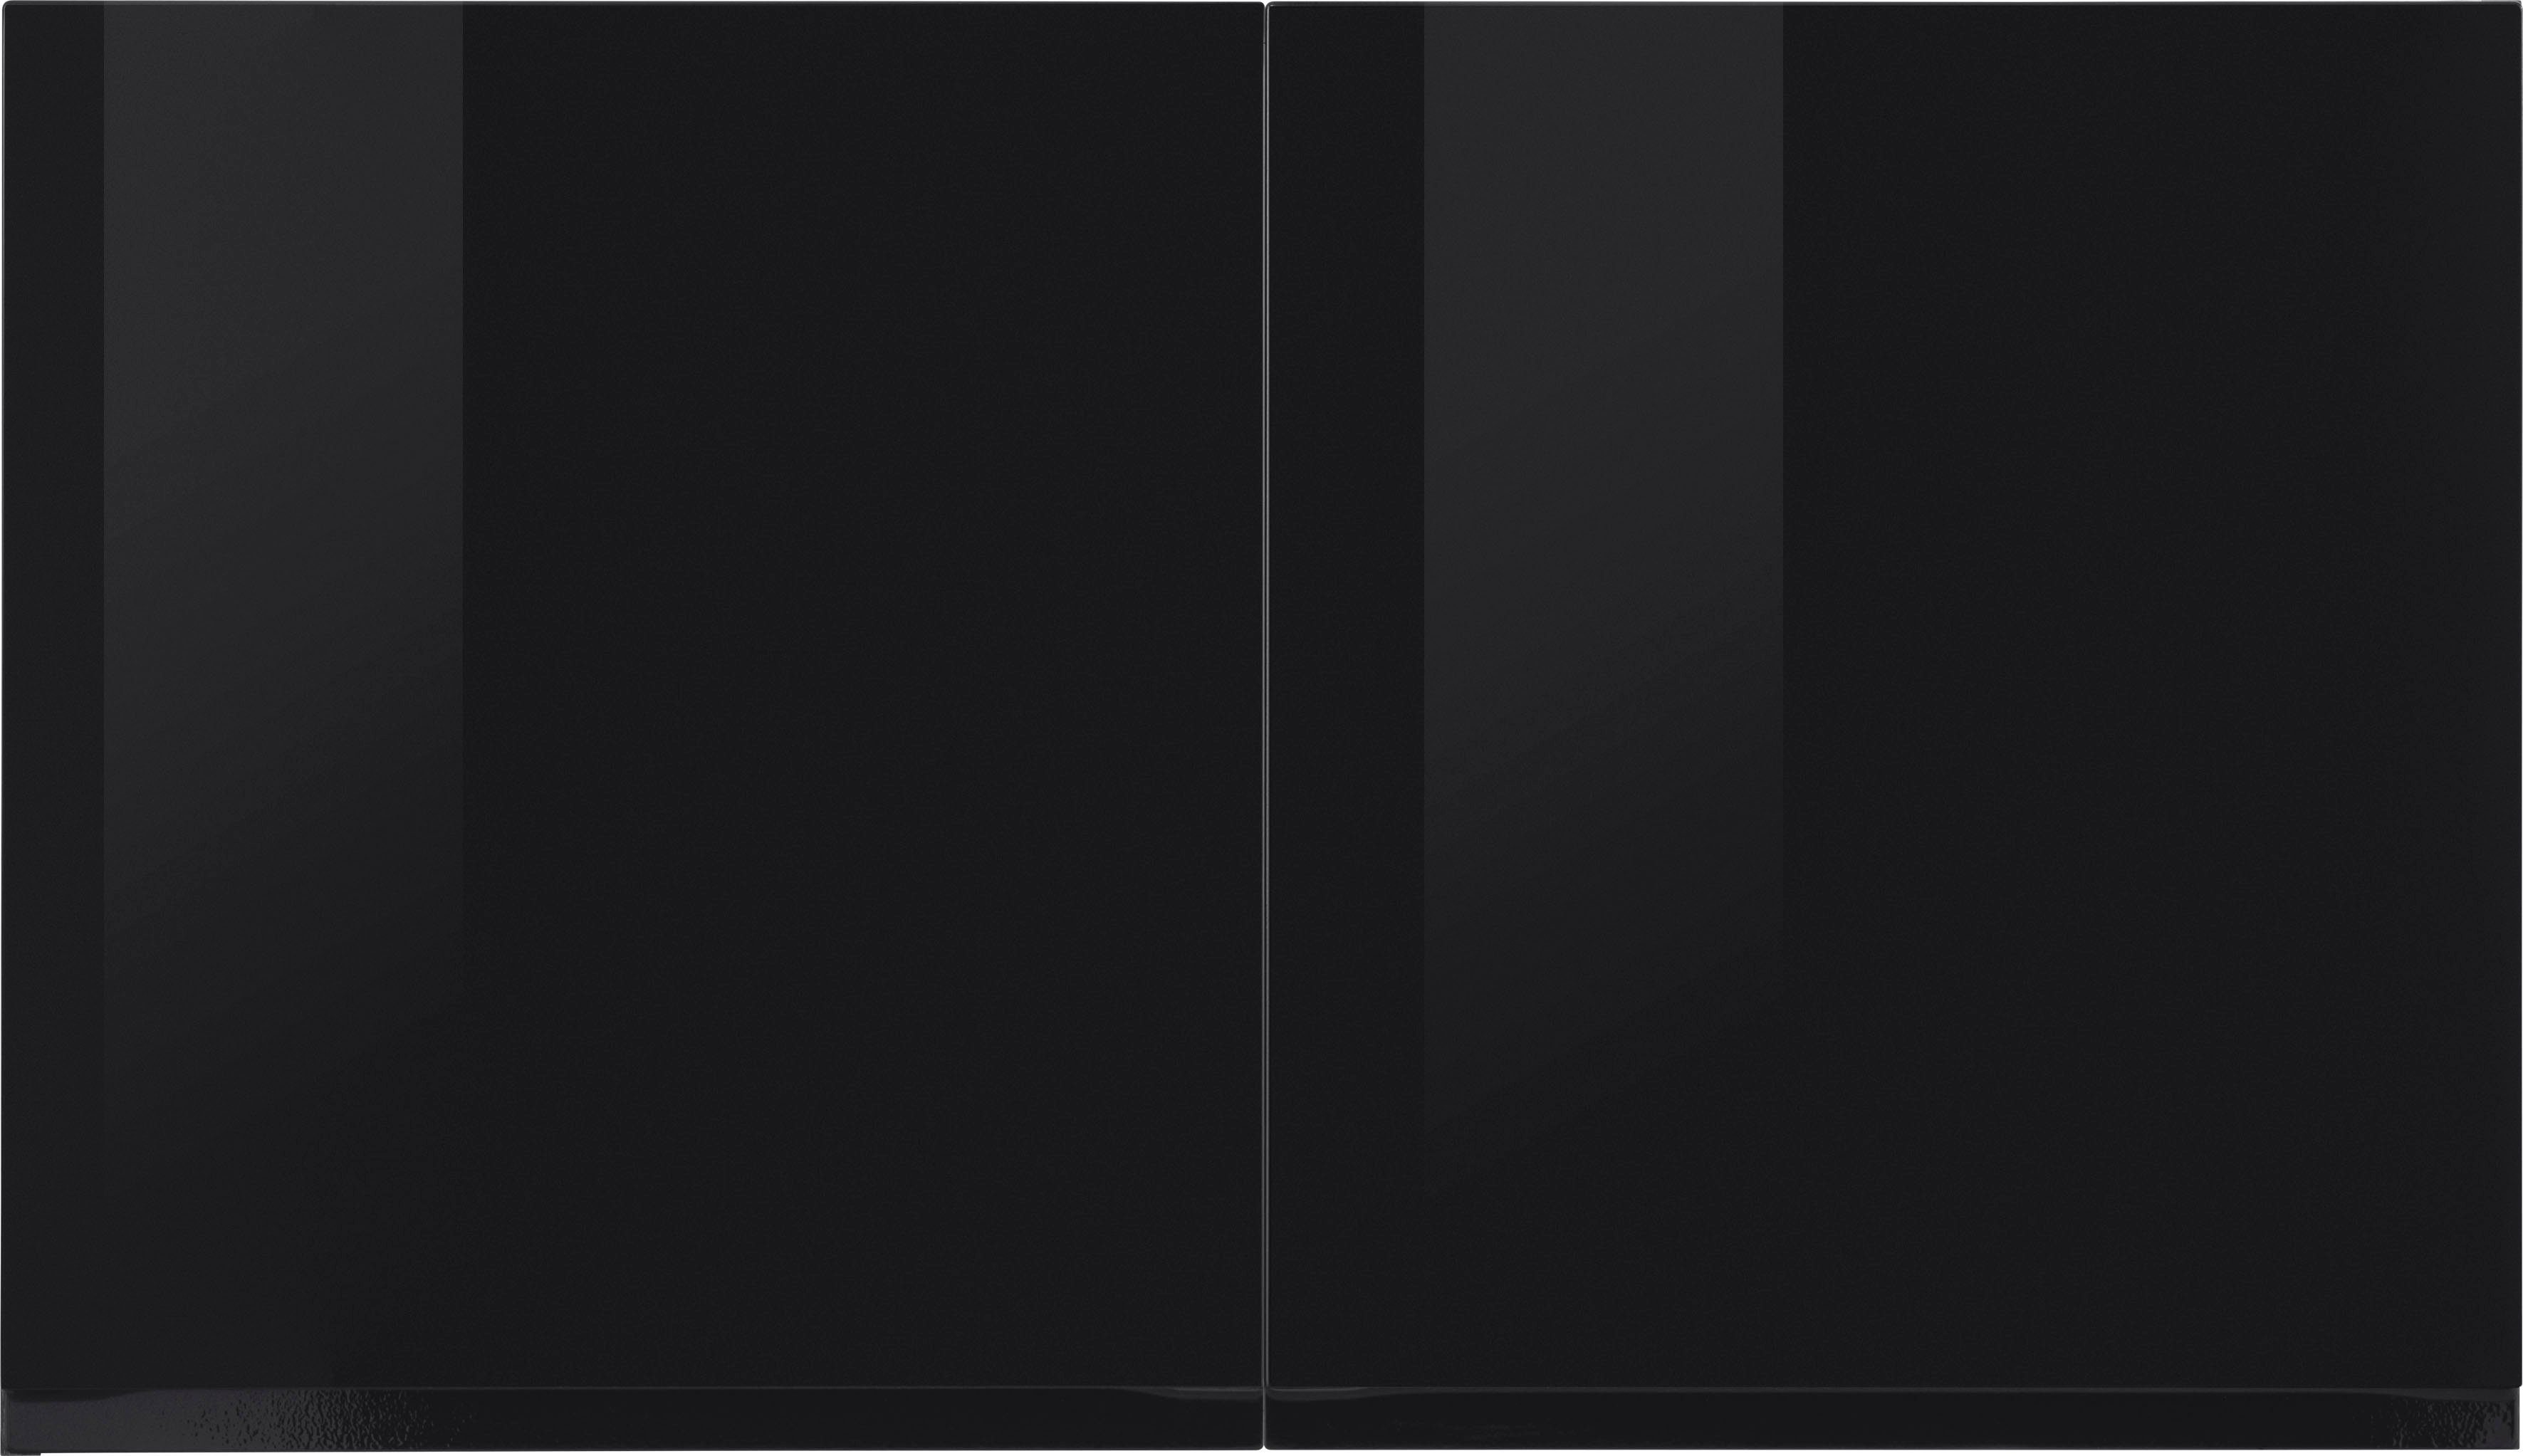 HELD MÖBEL Hängeschrank Virginia 100 cm breit, mit 2 Türen schwarz Hochglanz | eichevintage | Hängeschränke